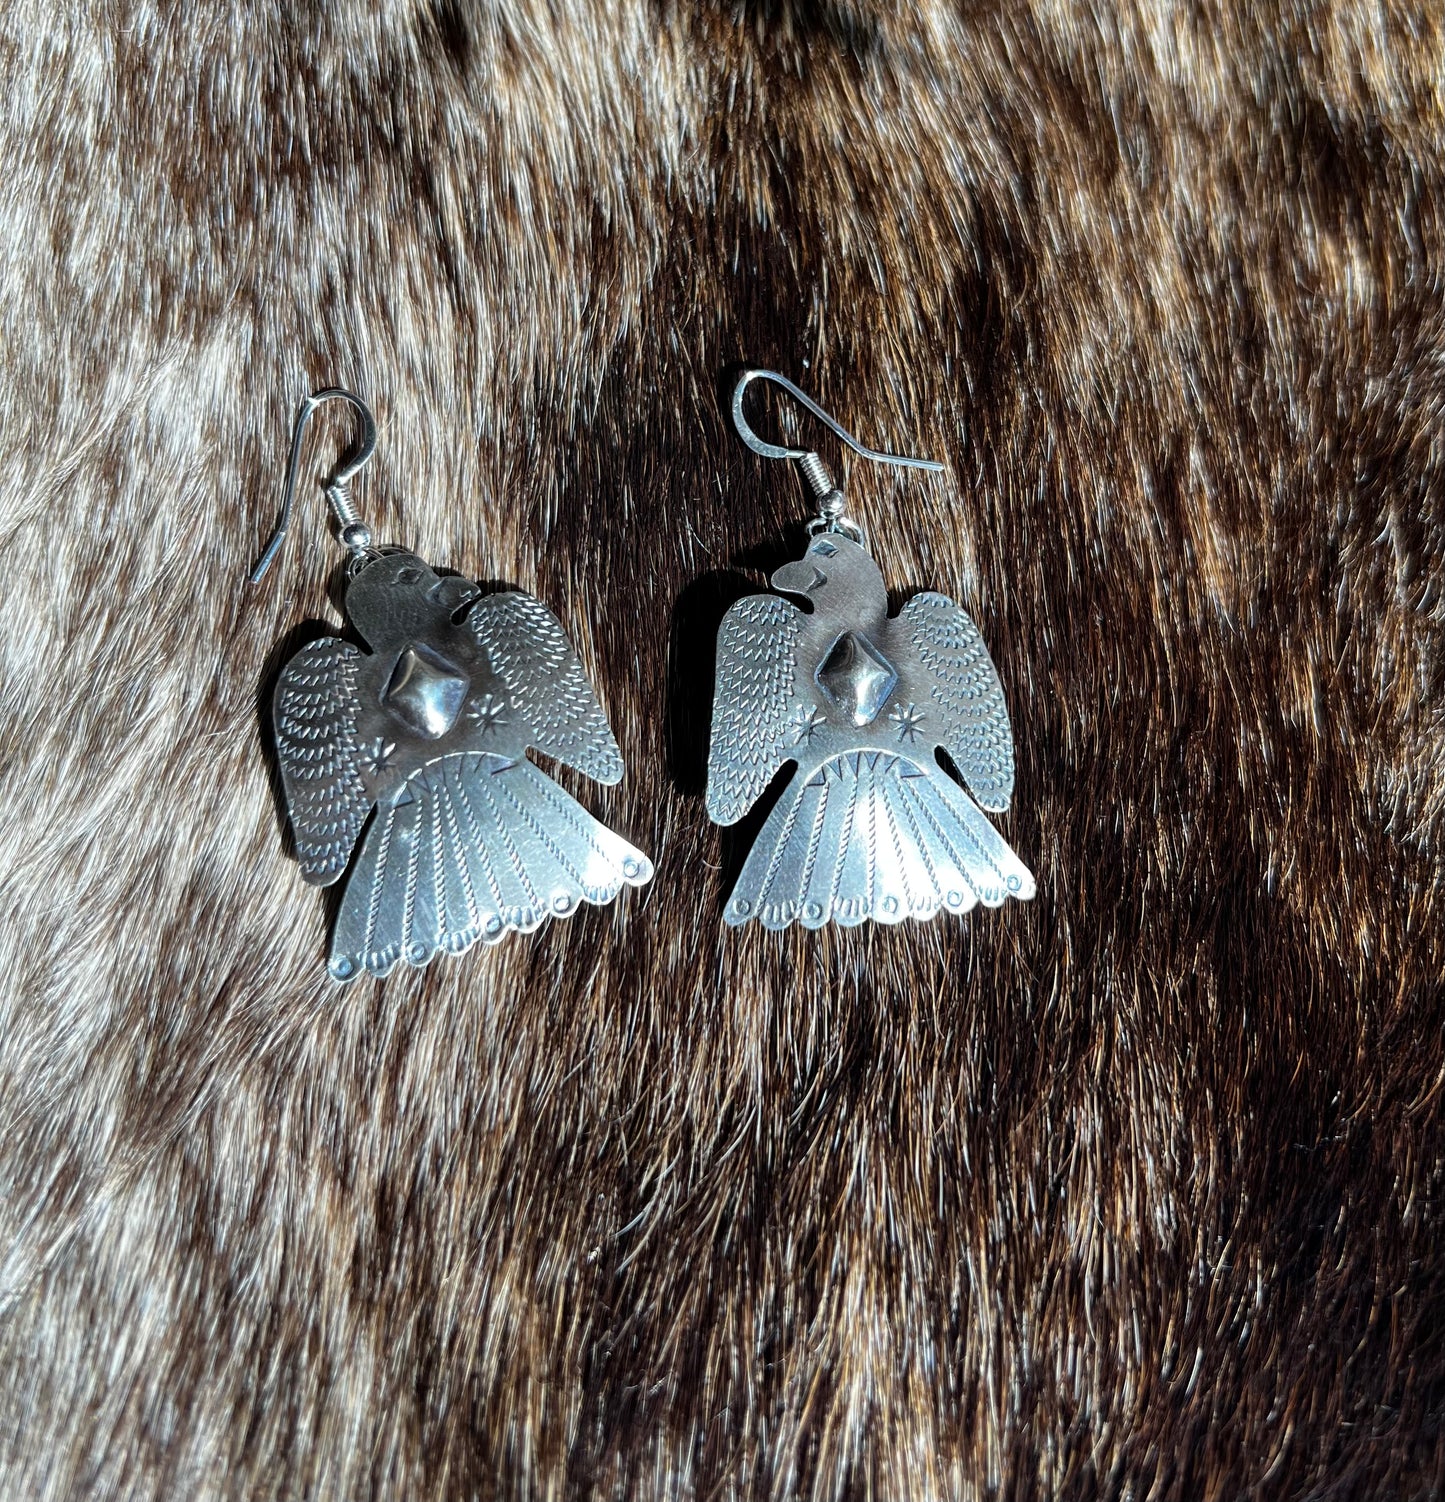 The Thunderbird Earrings